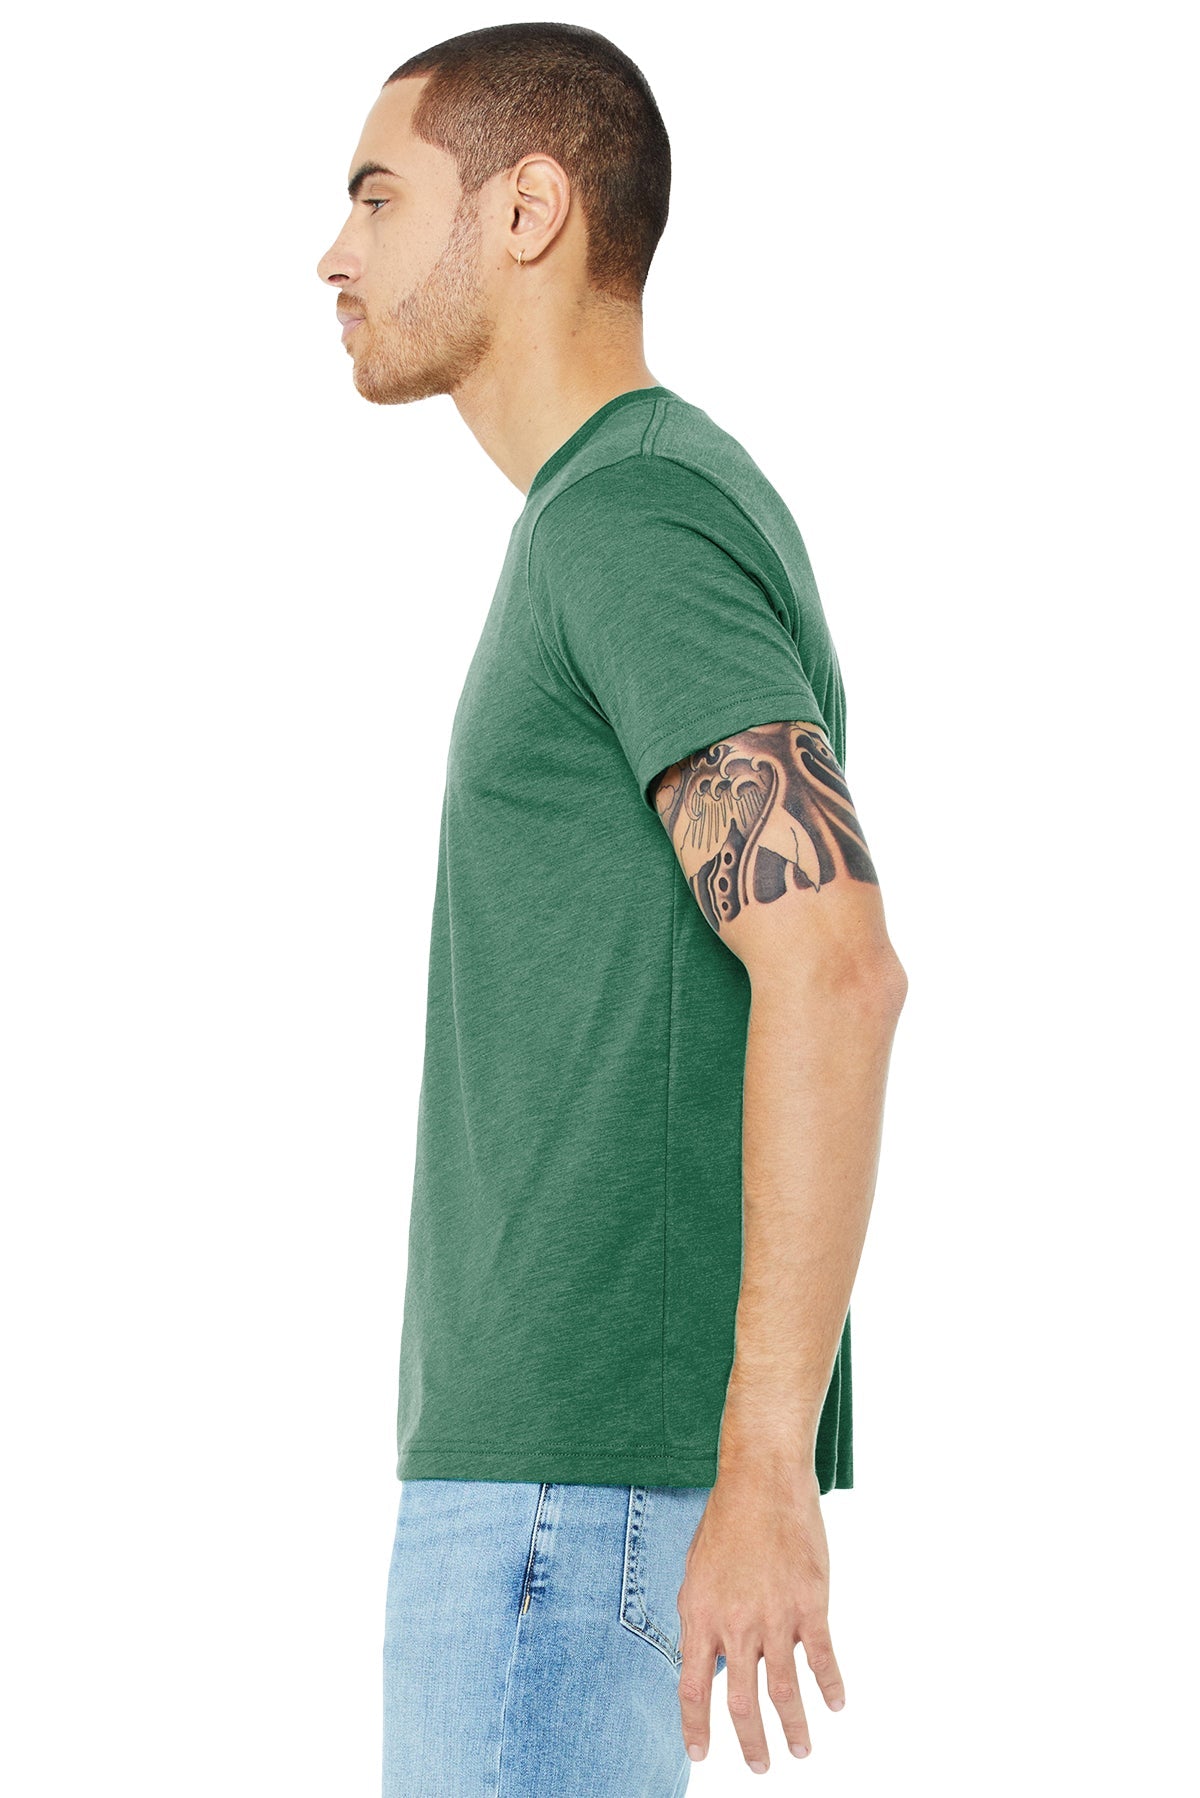 bella + canvas unisex triblend short sleeve t-shirt 3413c grass grn trblnd